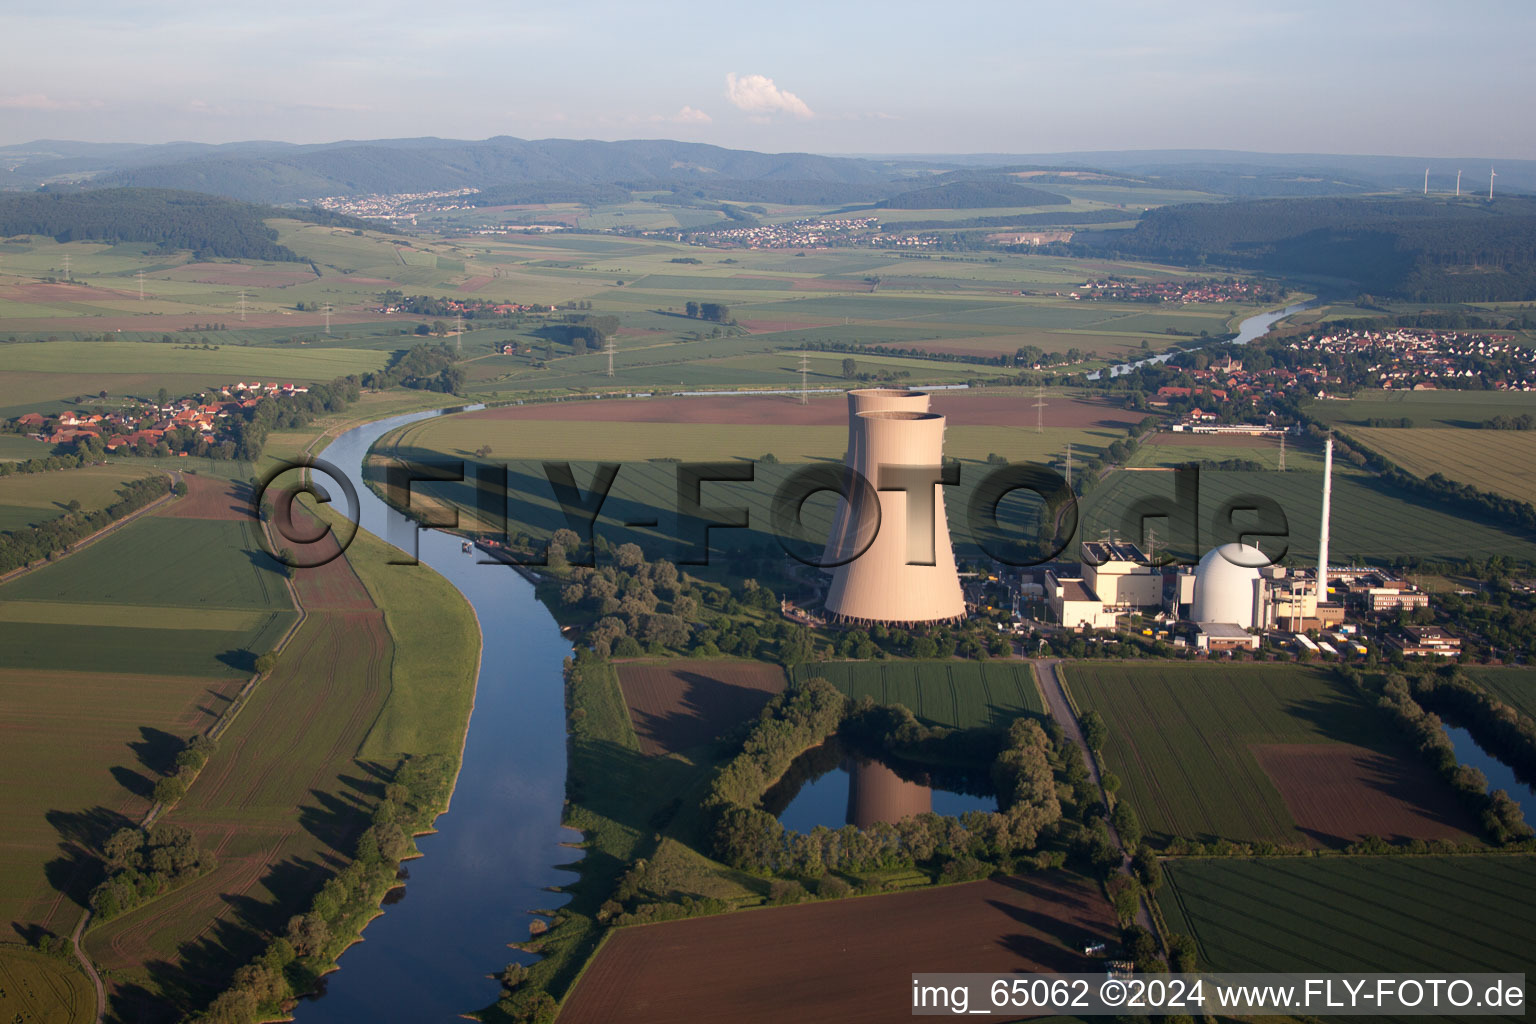 Luftbild von Reaktorblöcke, Kühlturmbauwerke und Anlagen des AKW - KKW Atomkraftwerk - Kernkraftwerk Grohnde in Emmerthal im Bundesland Niedersachsen, Deutschland